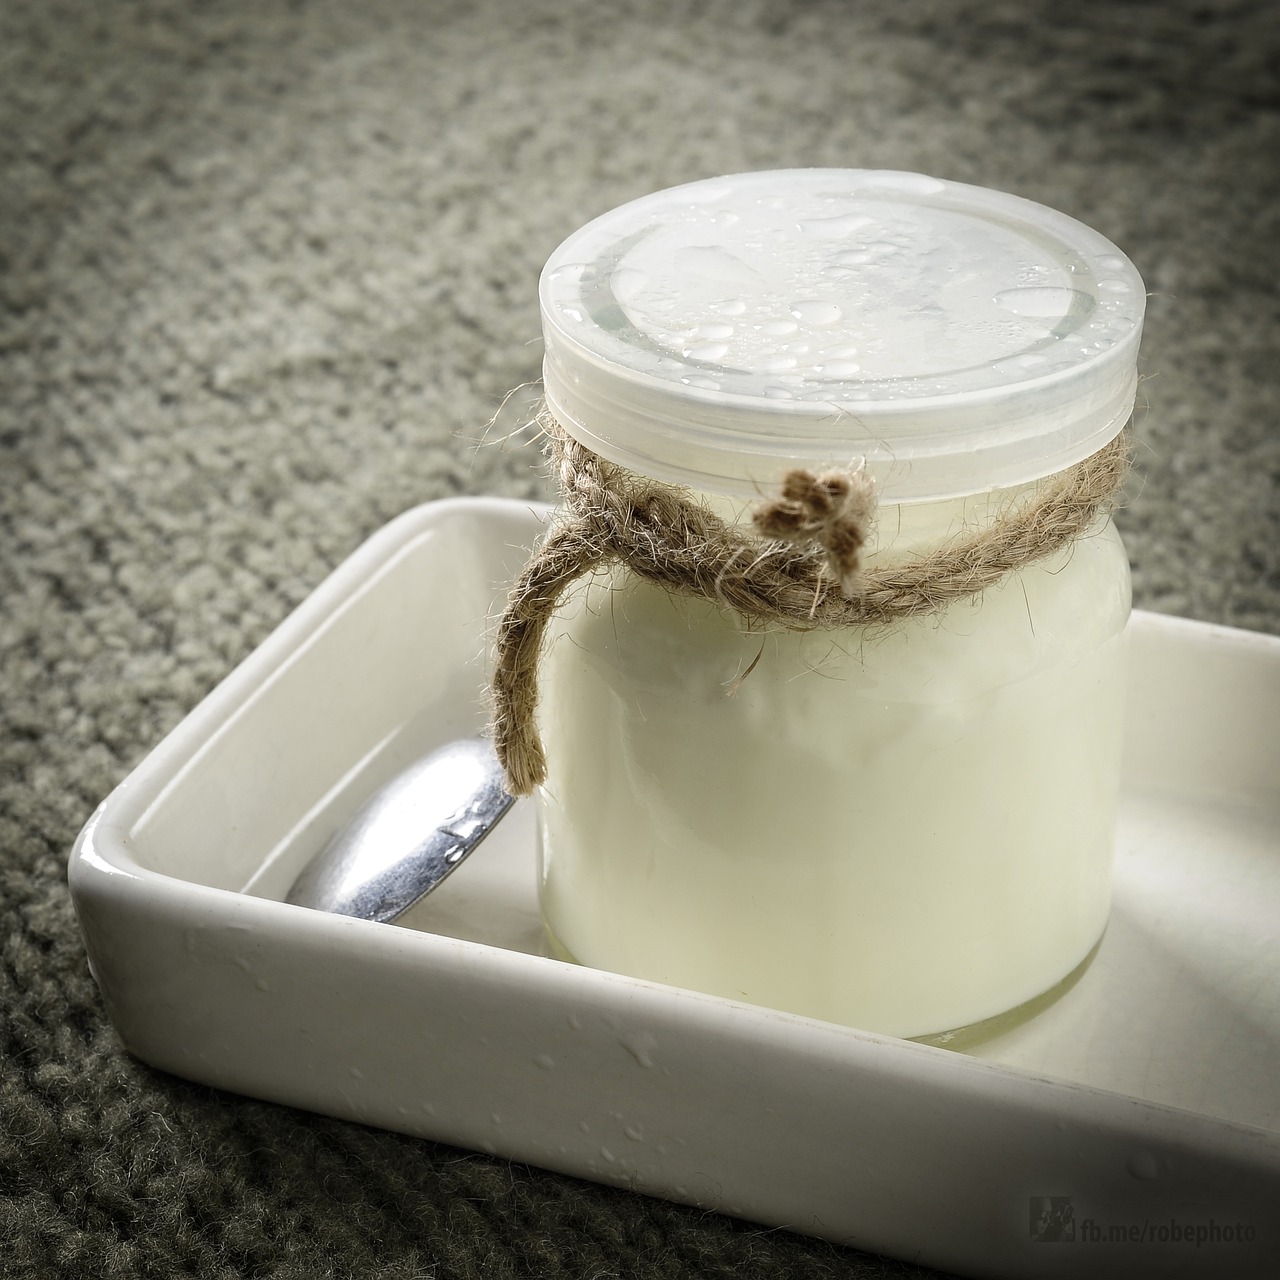 Hokus pokus: Jogurt v roli záchranáře